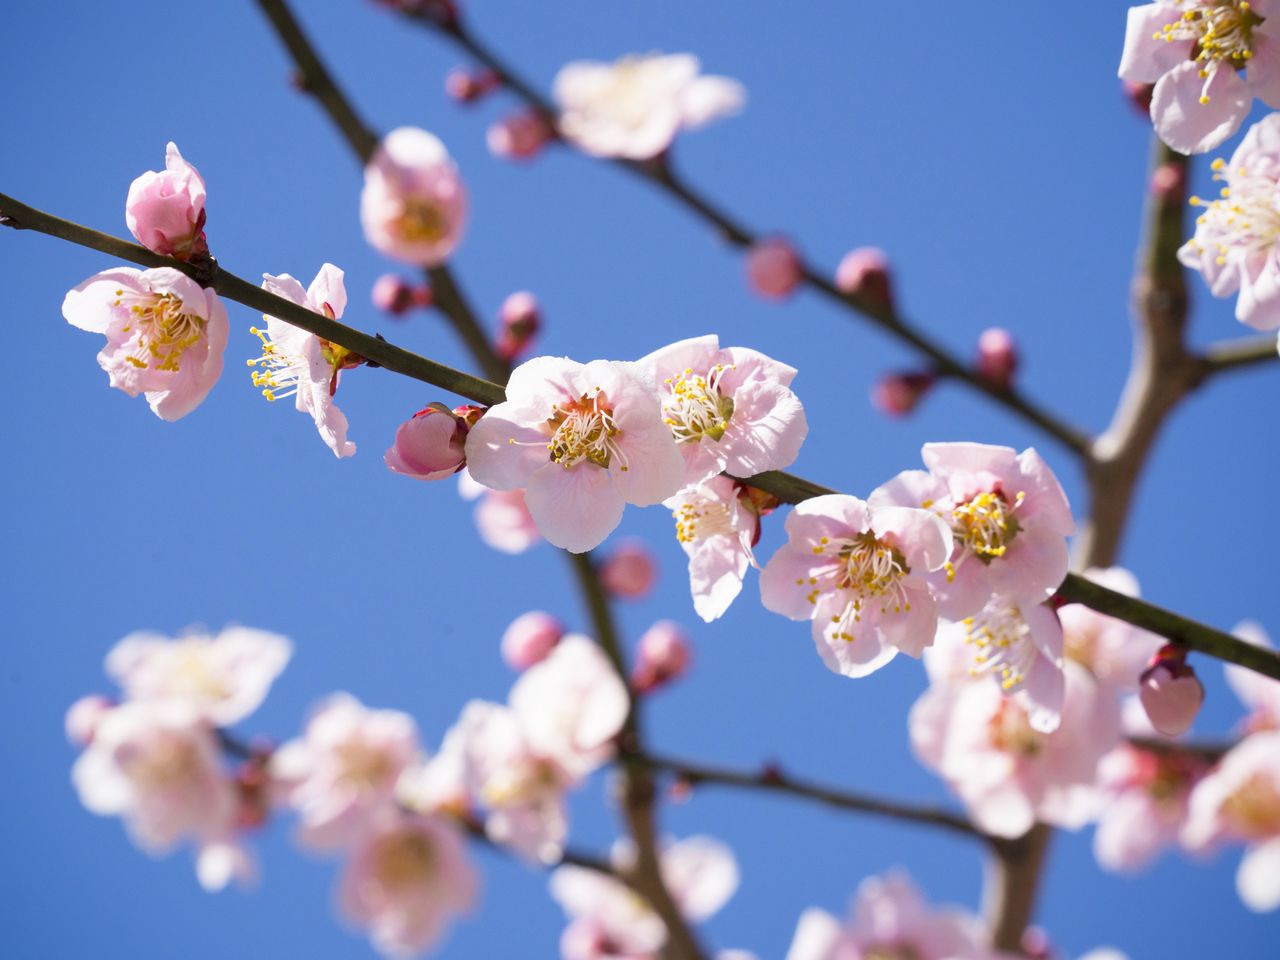 На территории святилища, включая сады, растёт 450 деревьев японской сливы 35 сортов